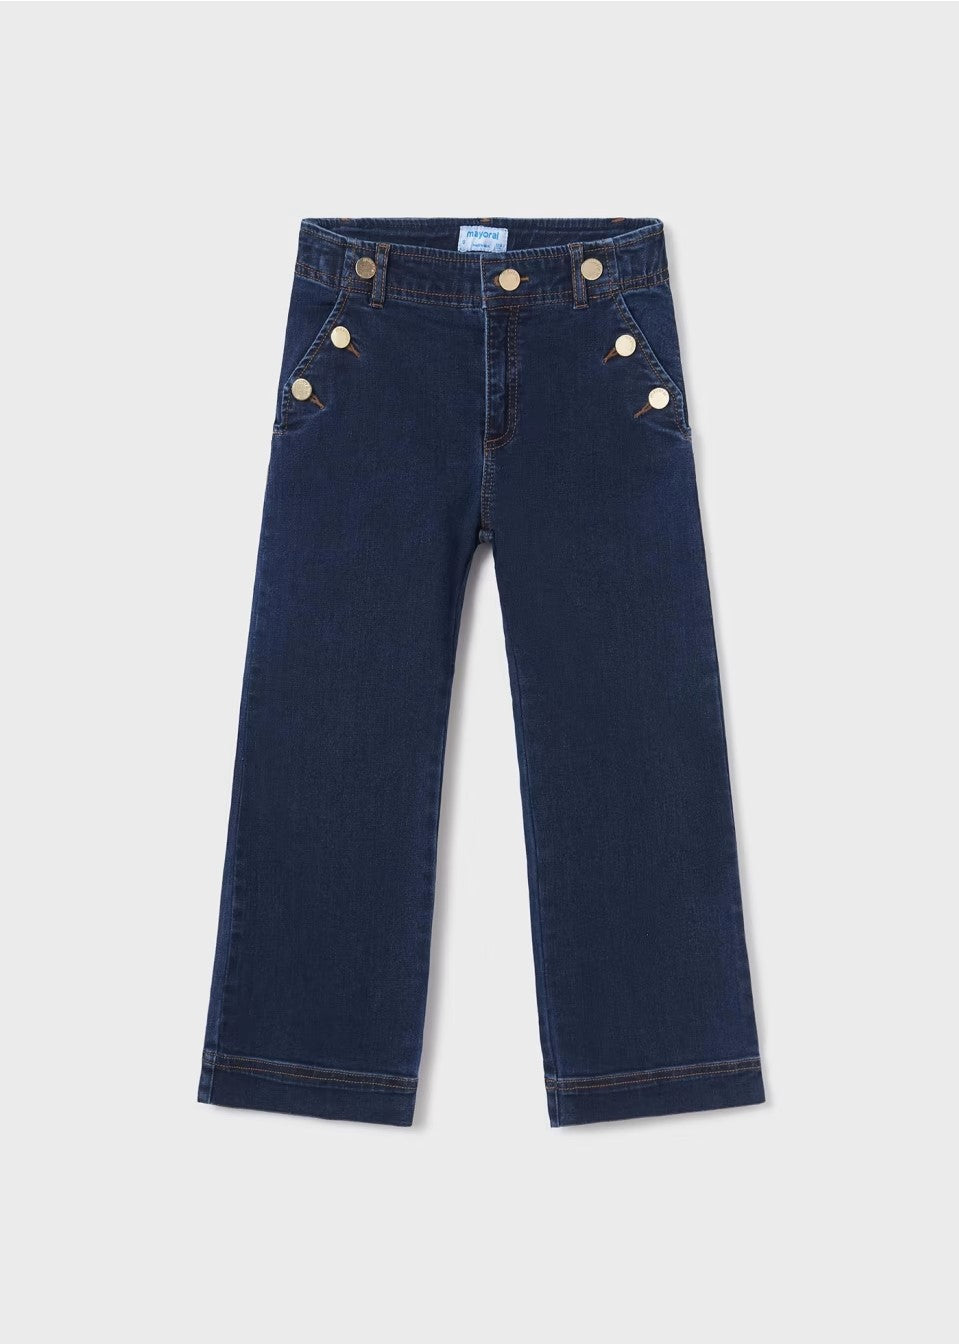 7501 - Tween High Waist Jeans - Wide Leg